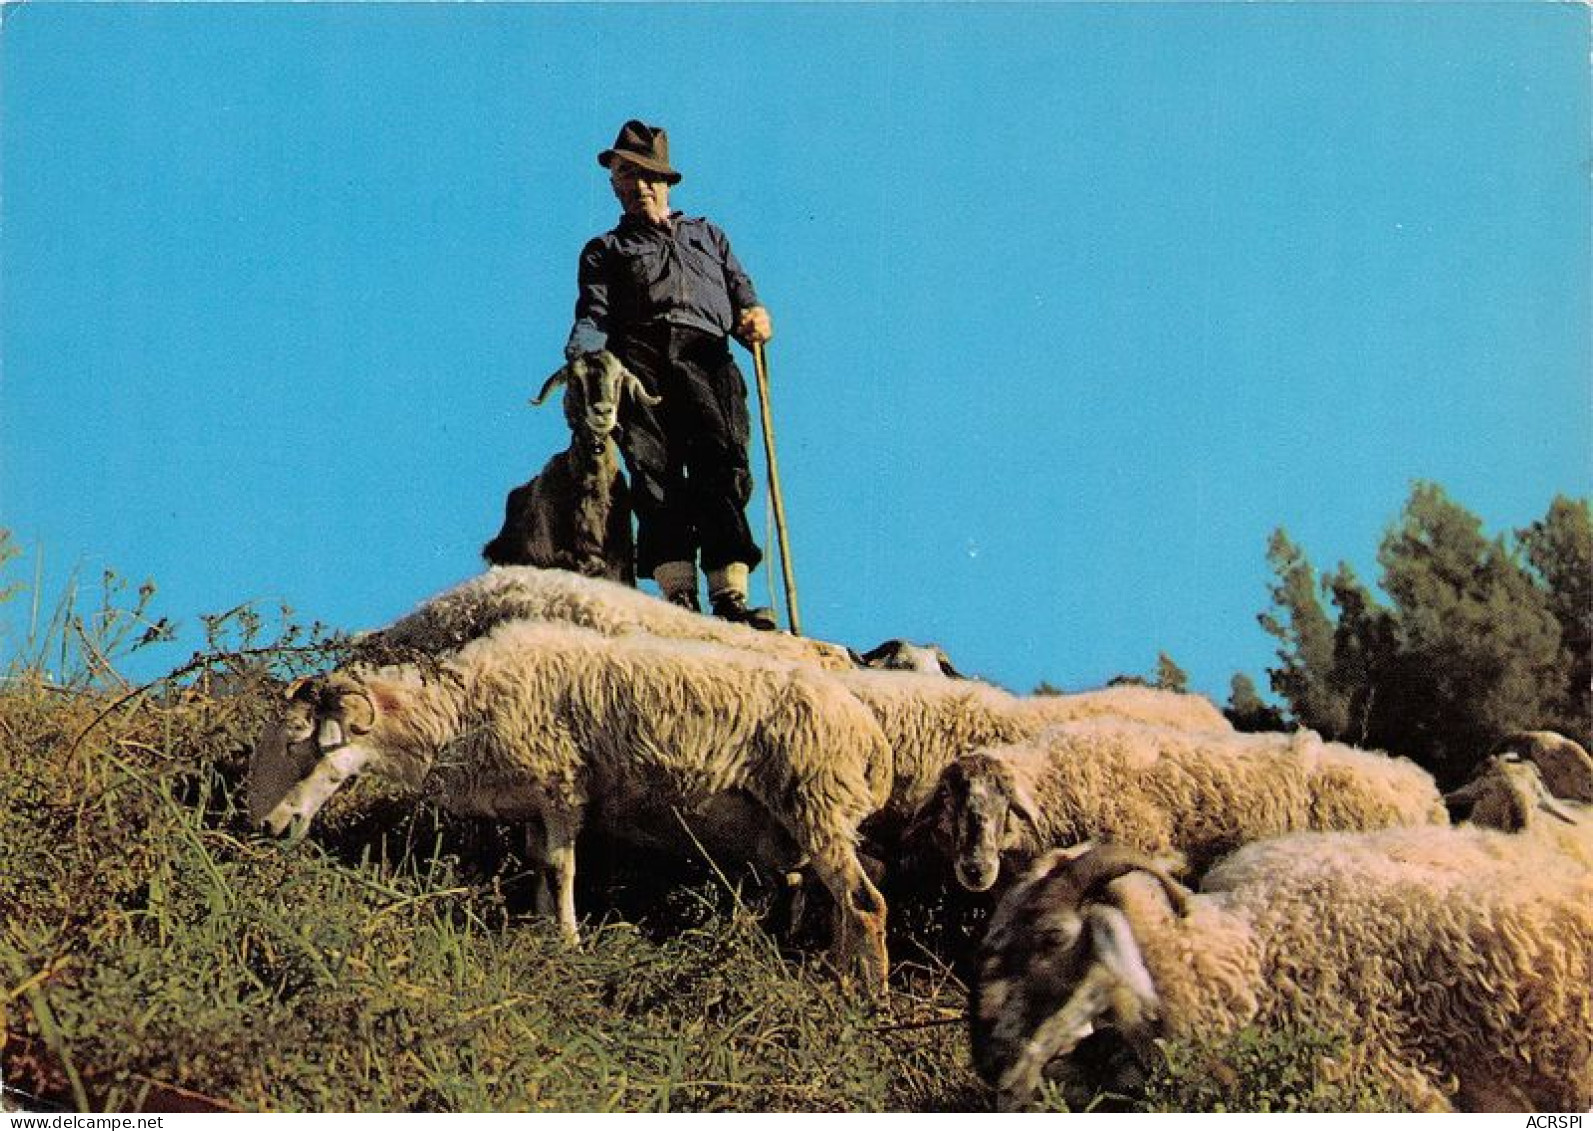  TRANSHUMANCE Mouton Moutons Dans Nos Montagnes Moutons Au Paturage 16(scan Recto-verso) MA1086 - Crías